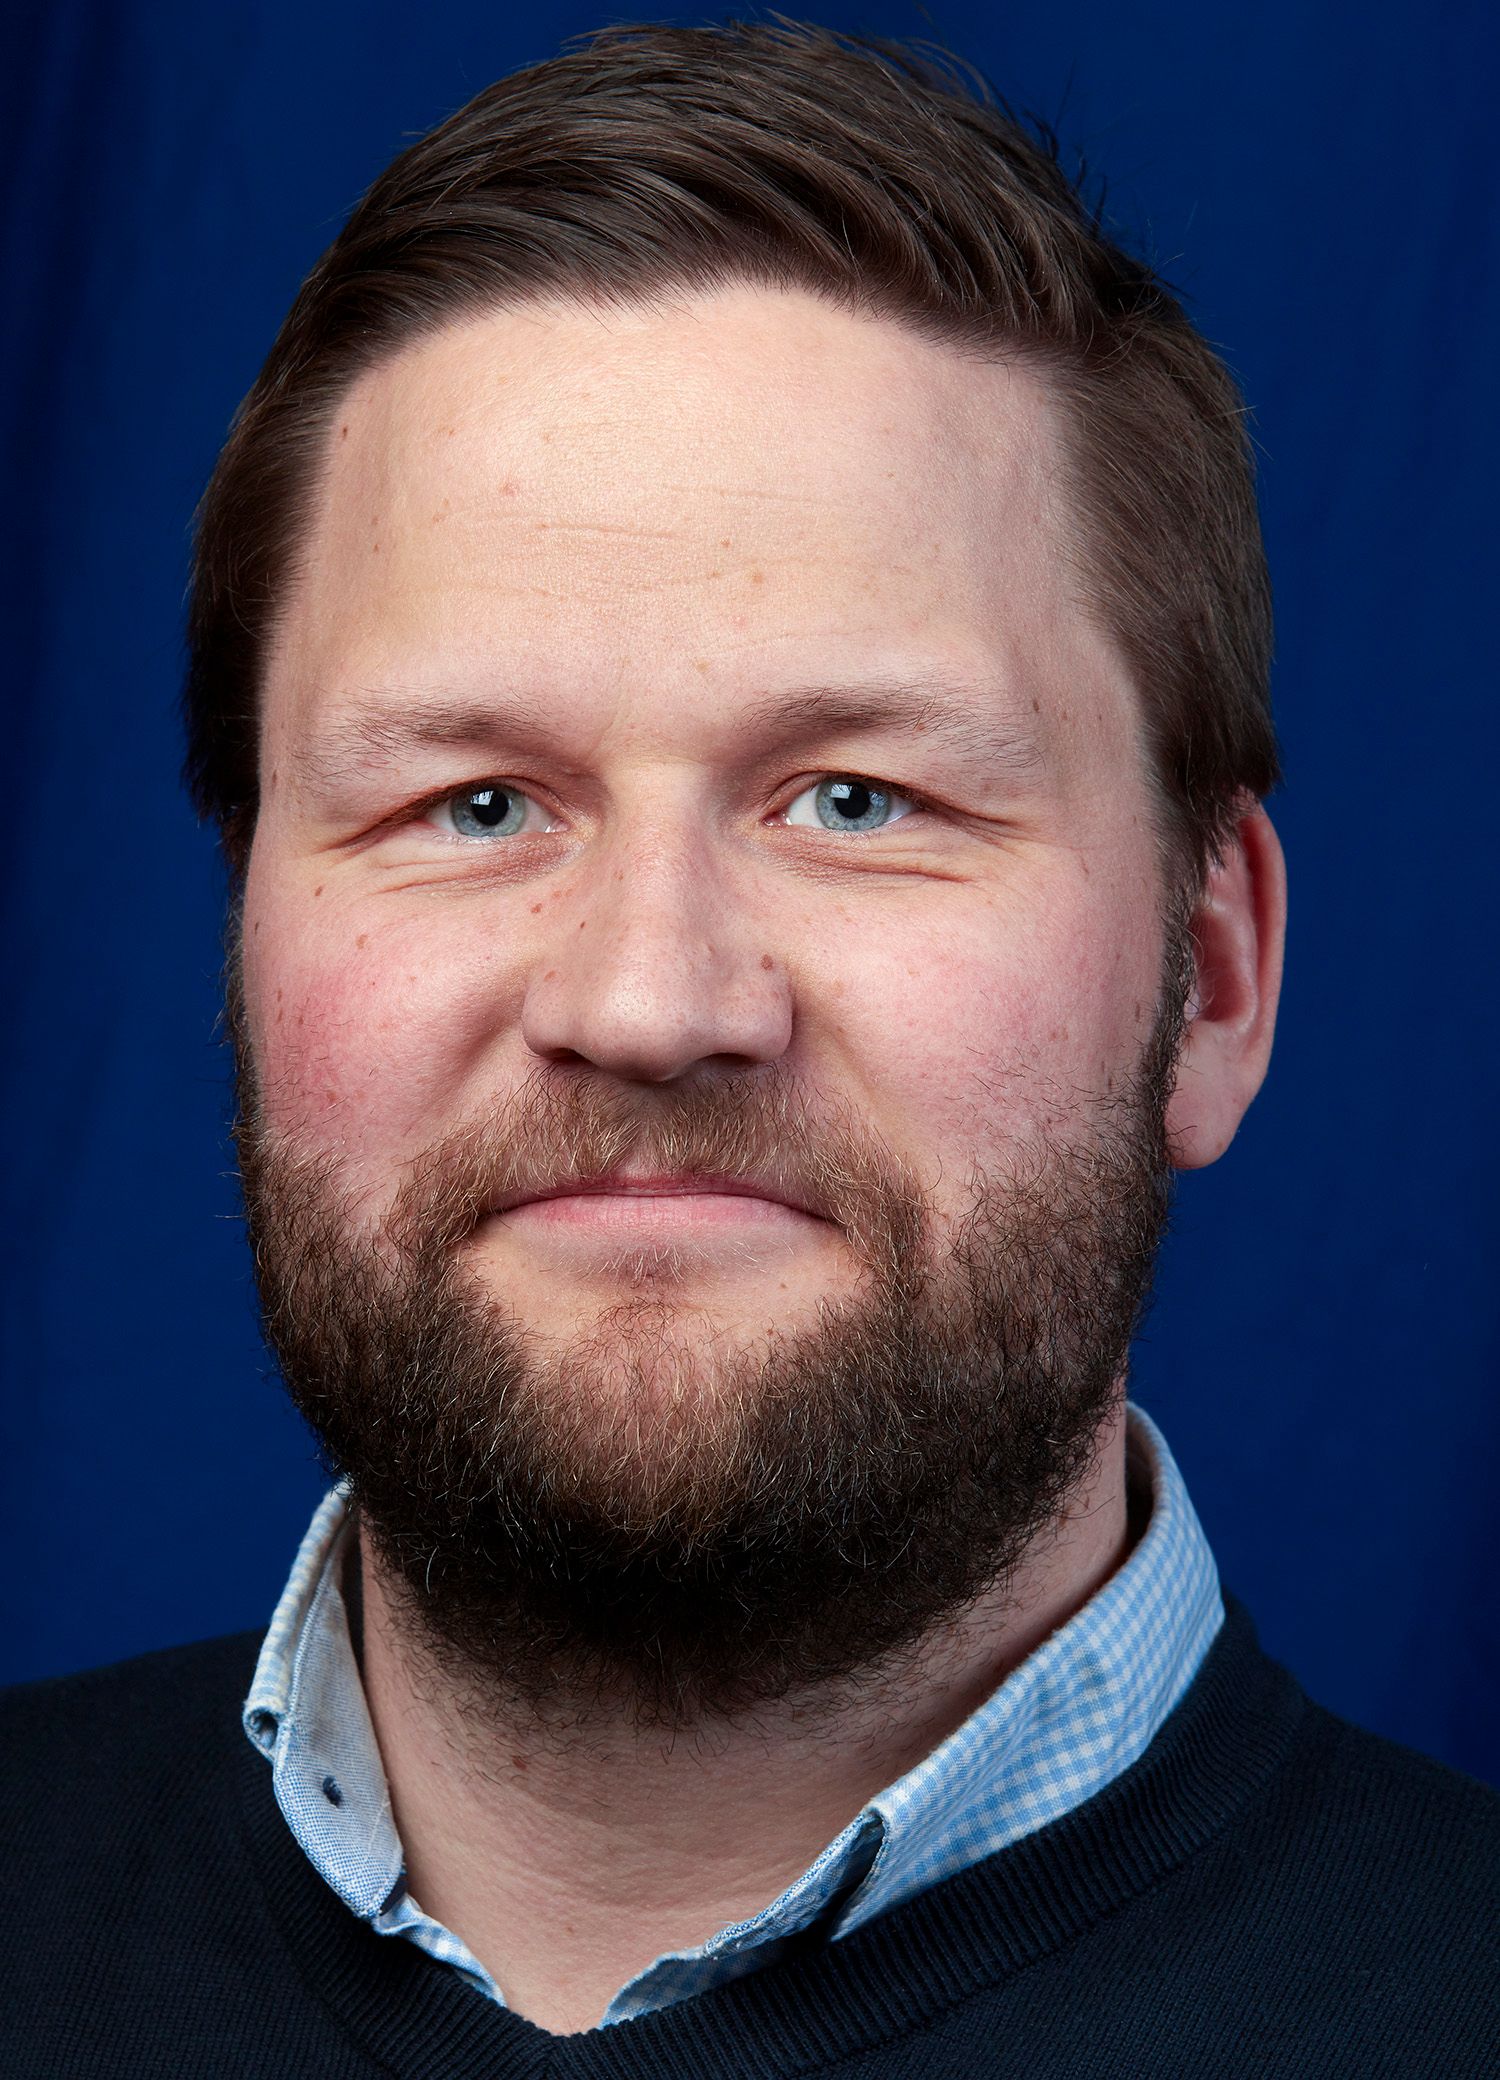 Jon-Steinar Sjøvik Hanstad, teknisk direktør i Nelfo. Foto: John Petter Reinertsen